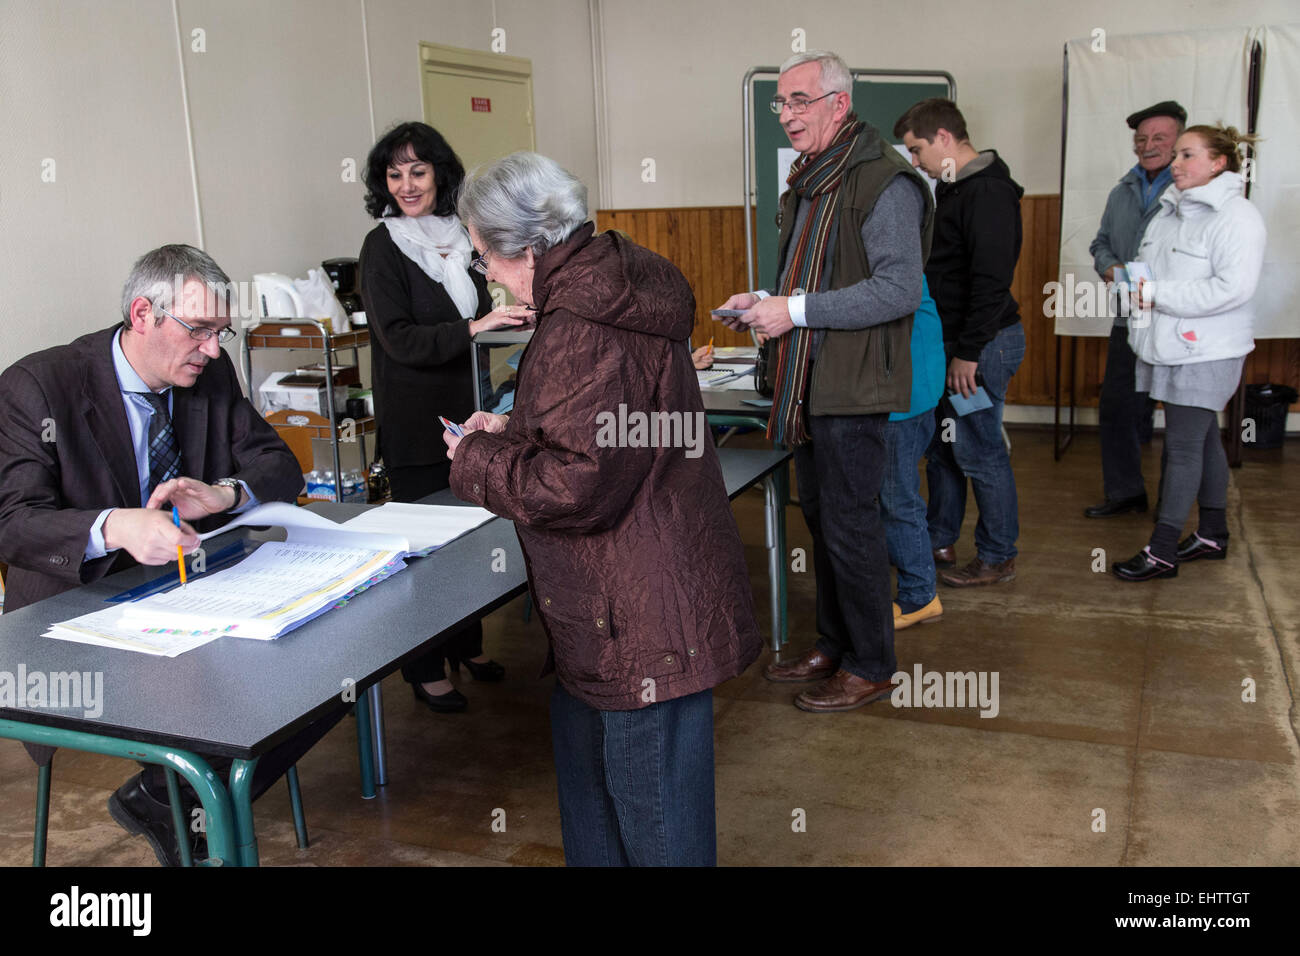 En France vote - Élections municipales Banque D'Images